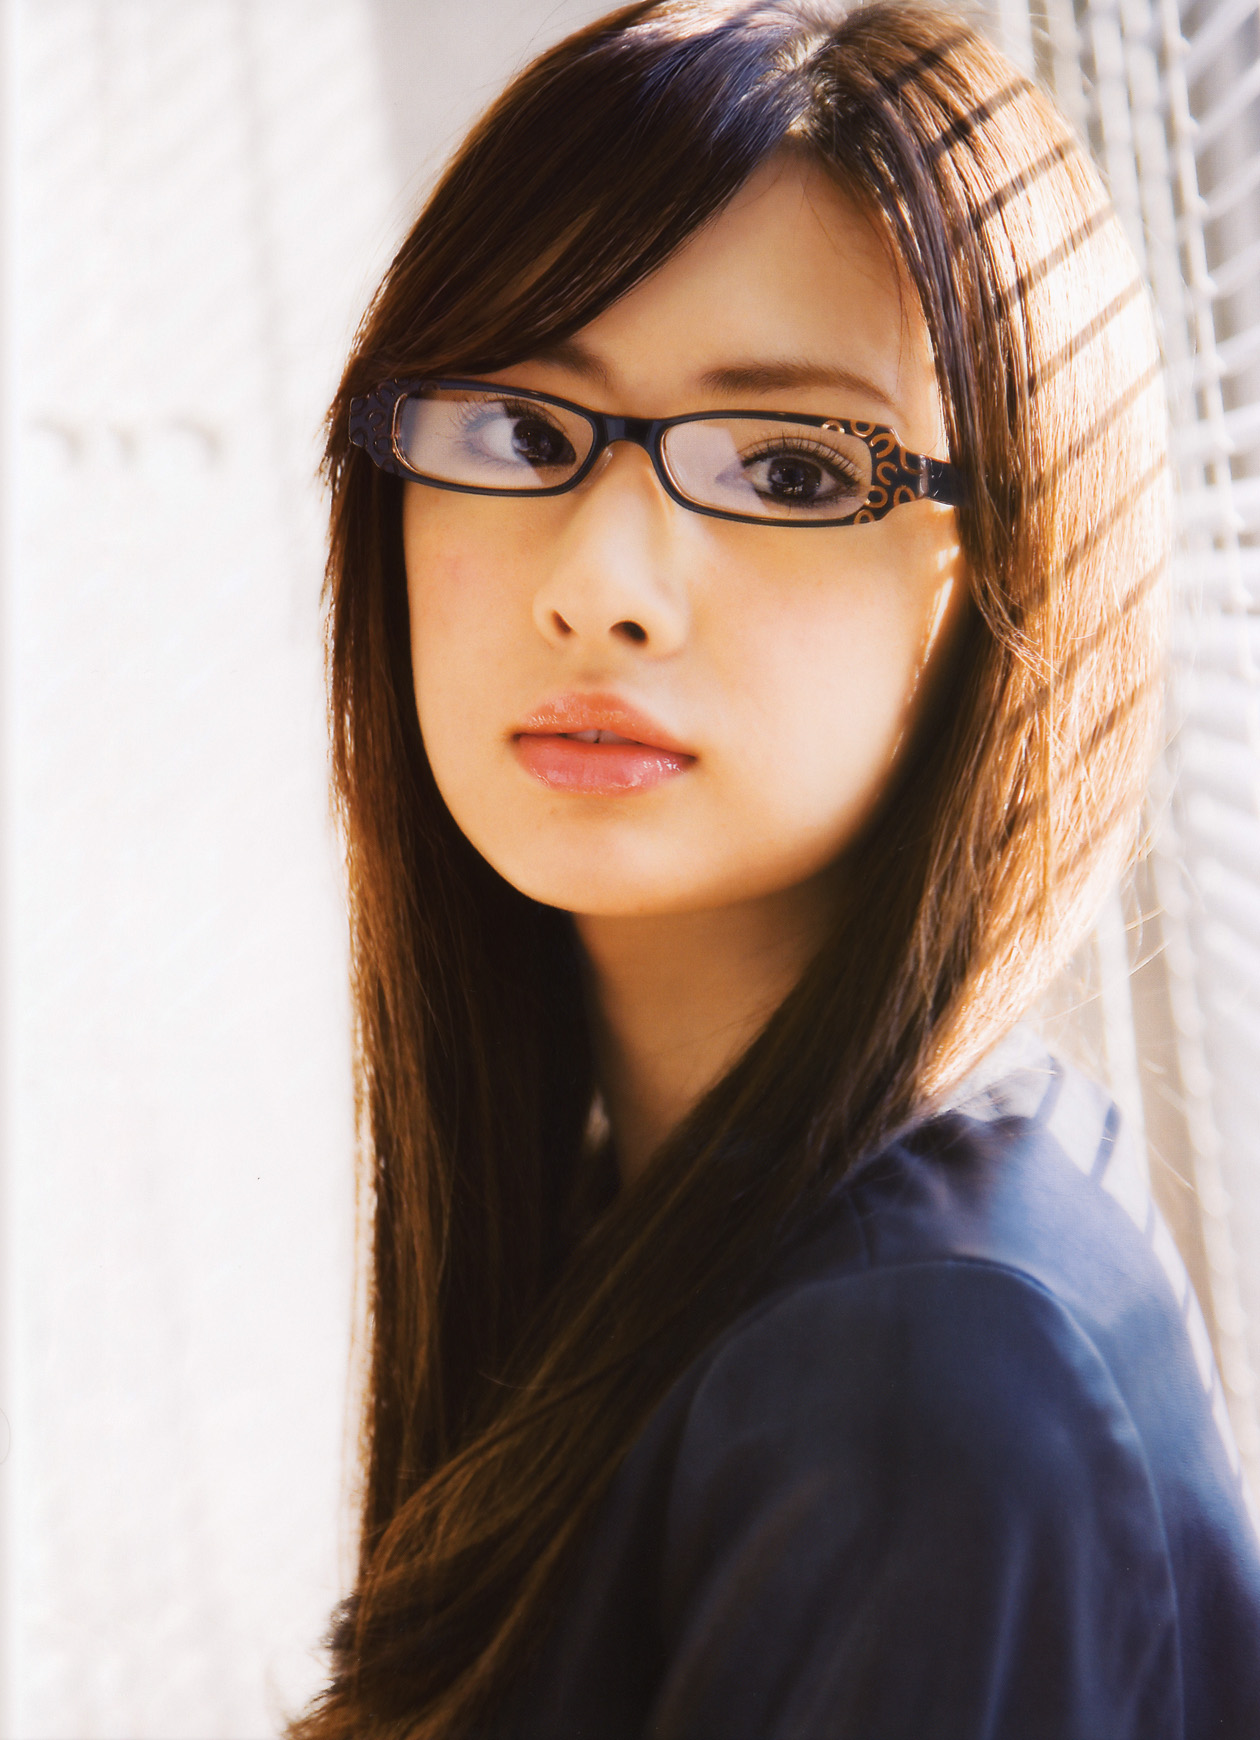 Cute beauty in glasses